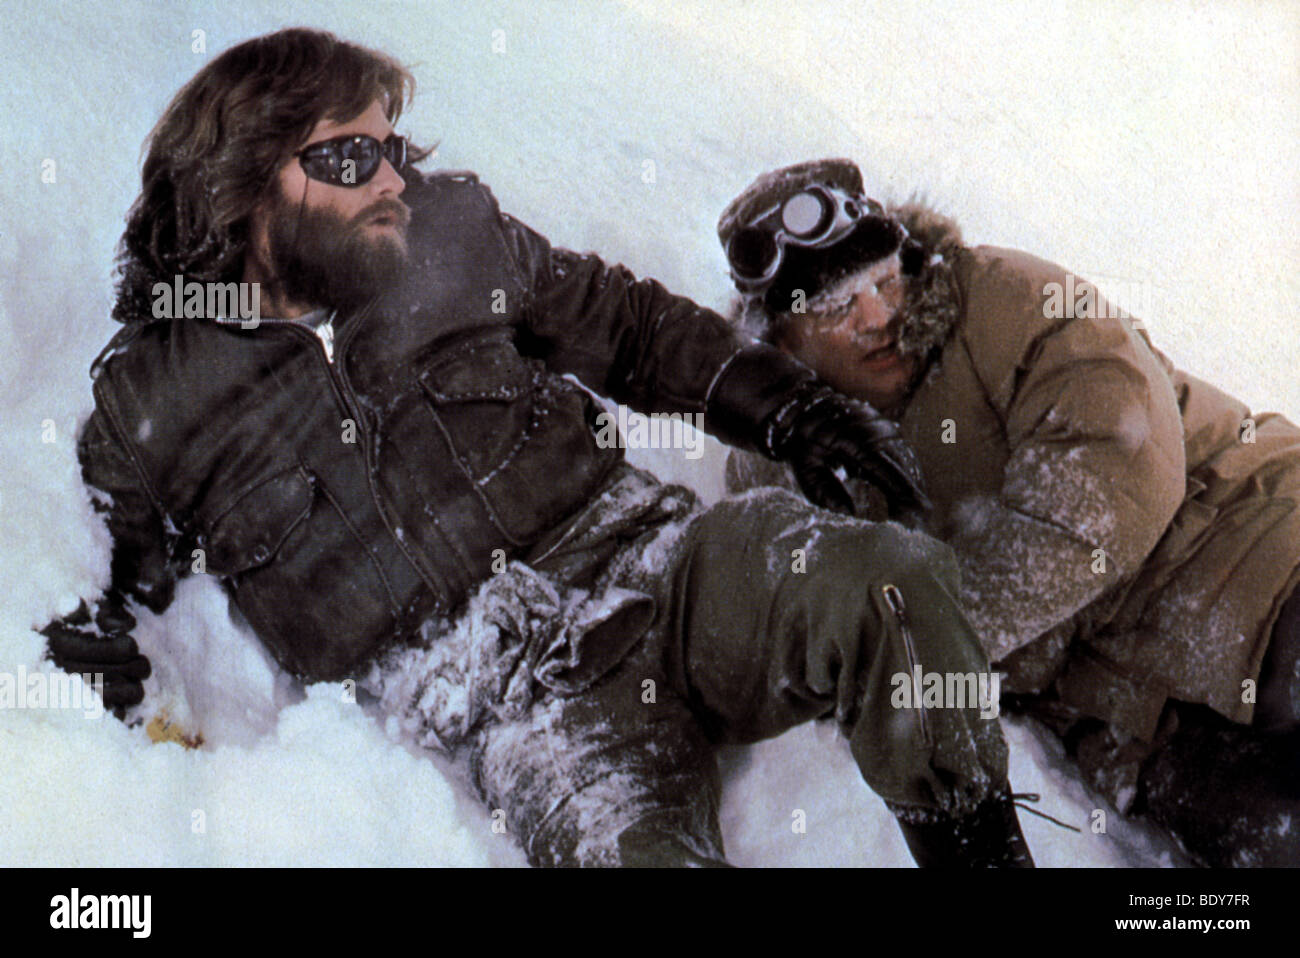 La cosa - 1982 film universale con Kurt Russell a sinistra Foto Stock